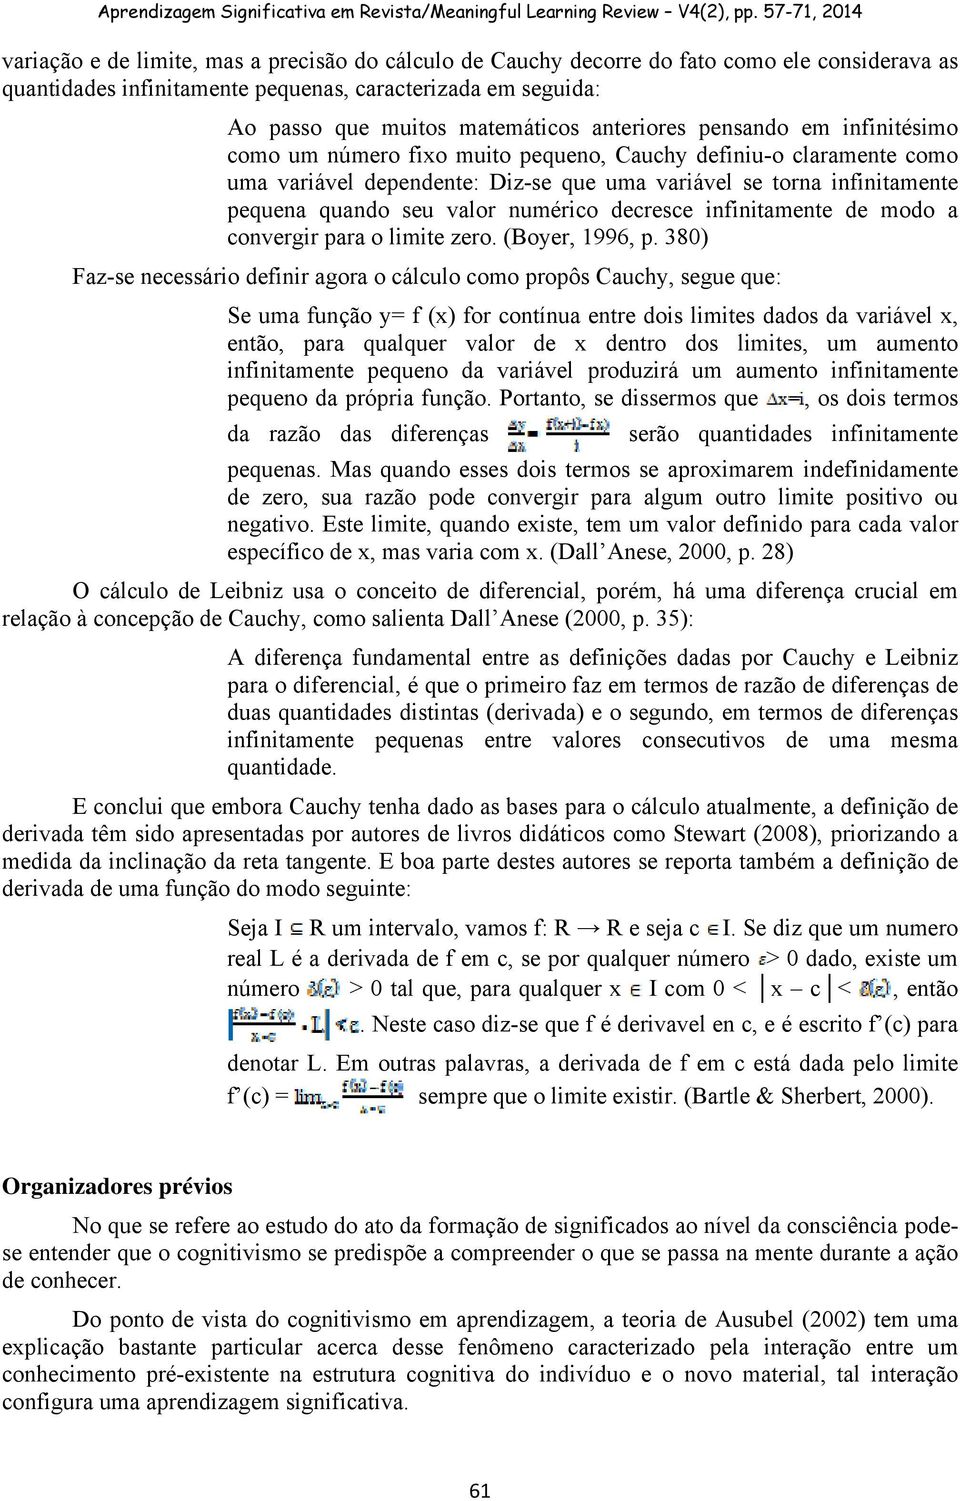 380) Fz-s ncssário dfinir gor o cálculo como propôs Cuchy, sgu qu: S um função y= f (x) for contínu ntr dois limis ddos d vriávl x, ntão, pr qulqur vlor d x dntro dos limis, um umnto infinitmn pquno